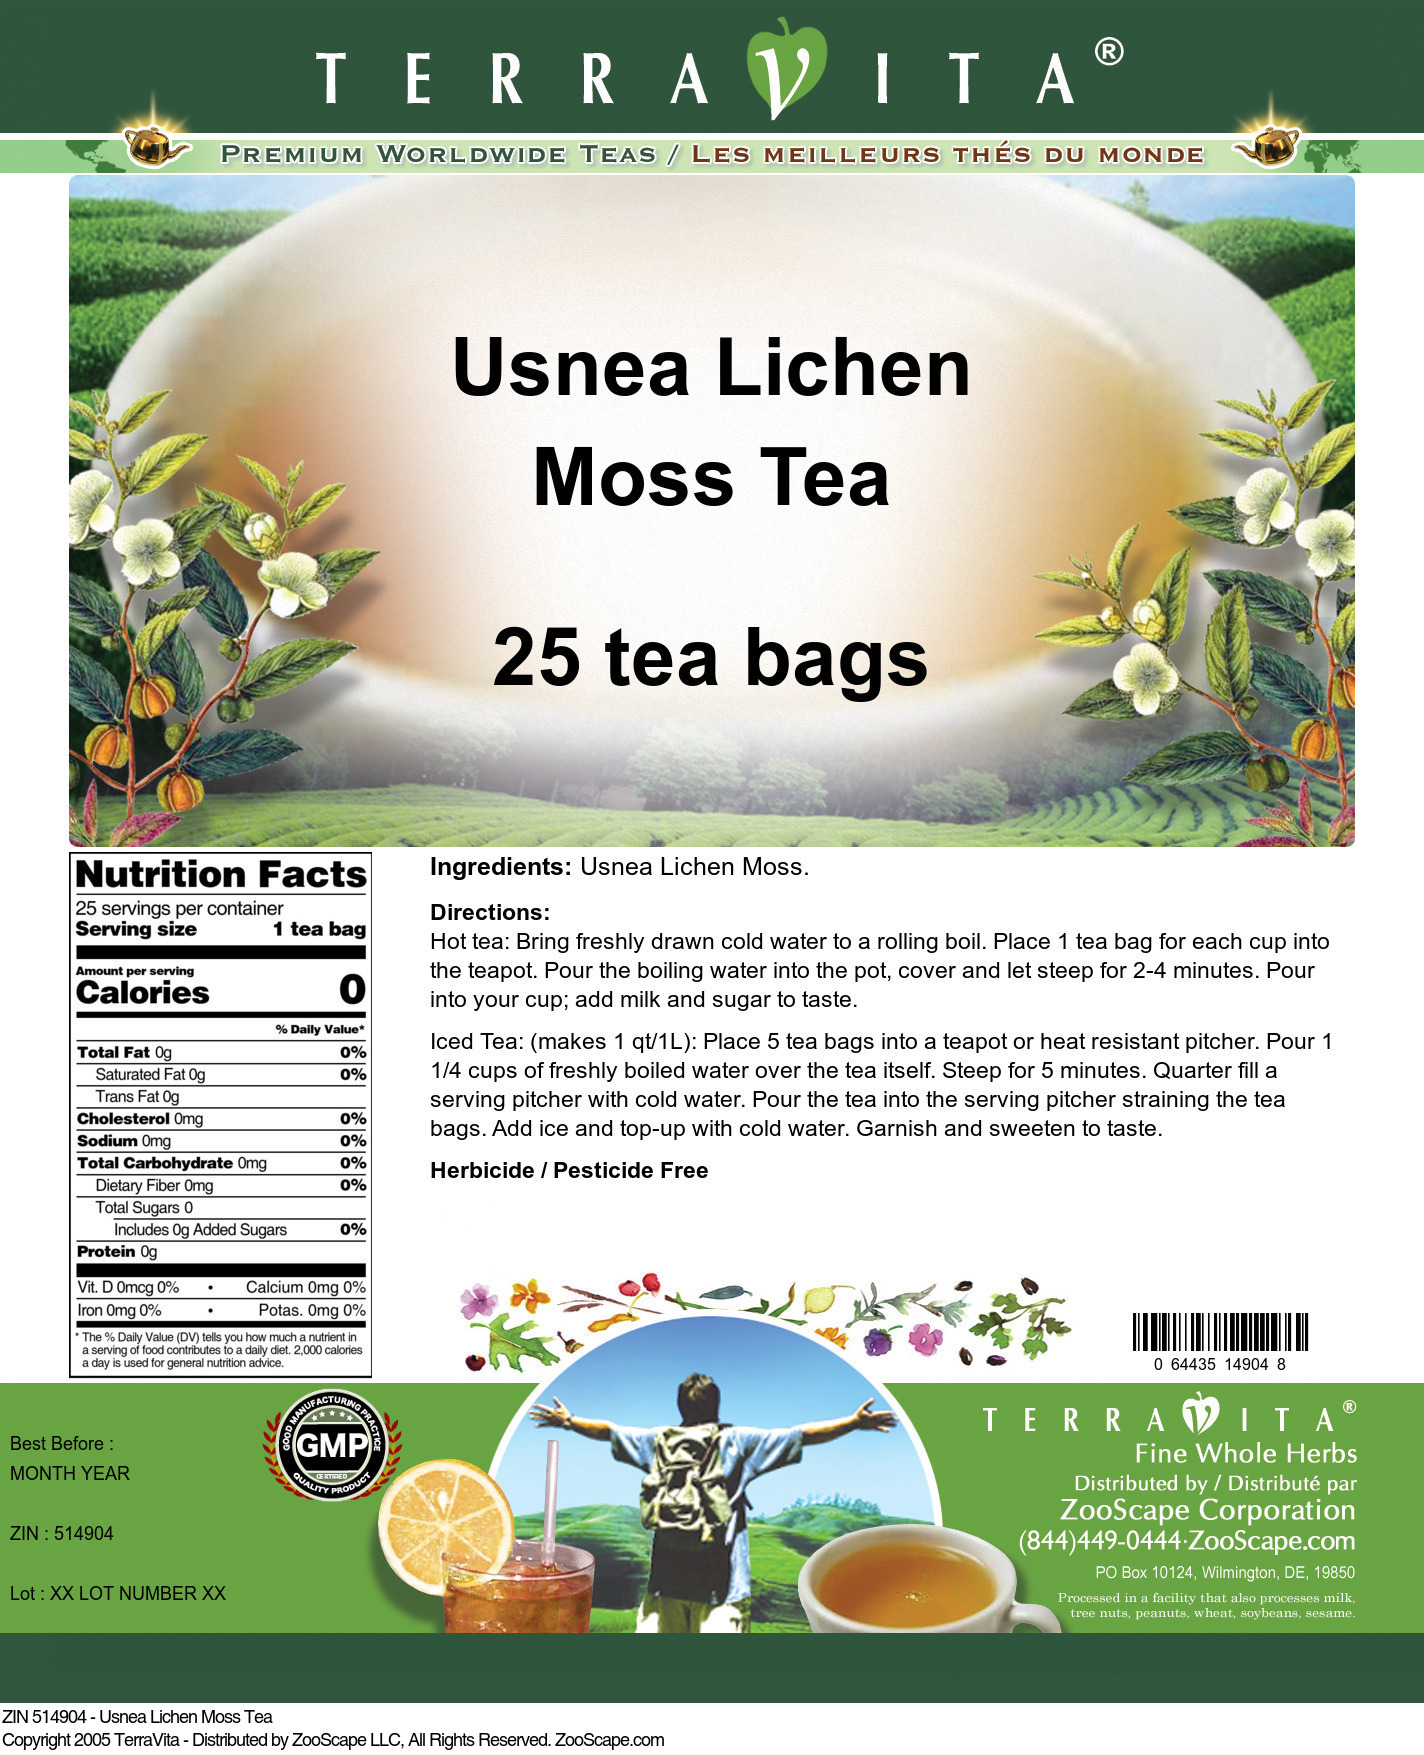 Usnea Lichen Moss Tea - Label